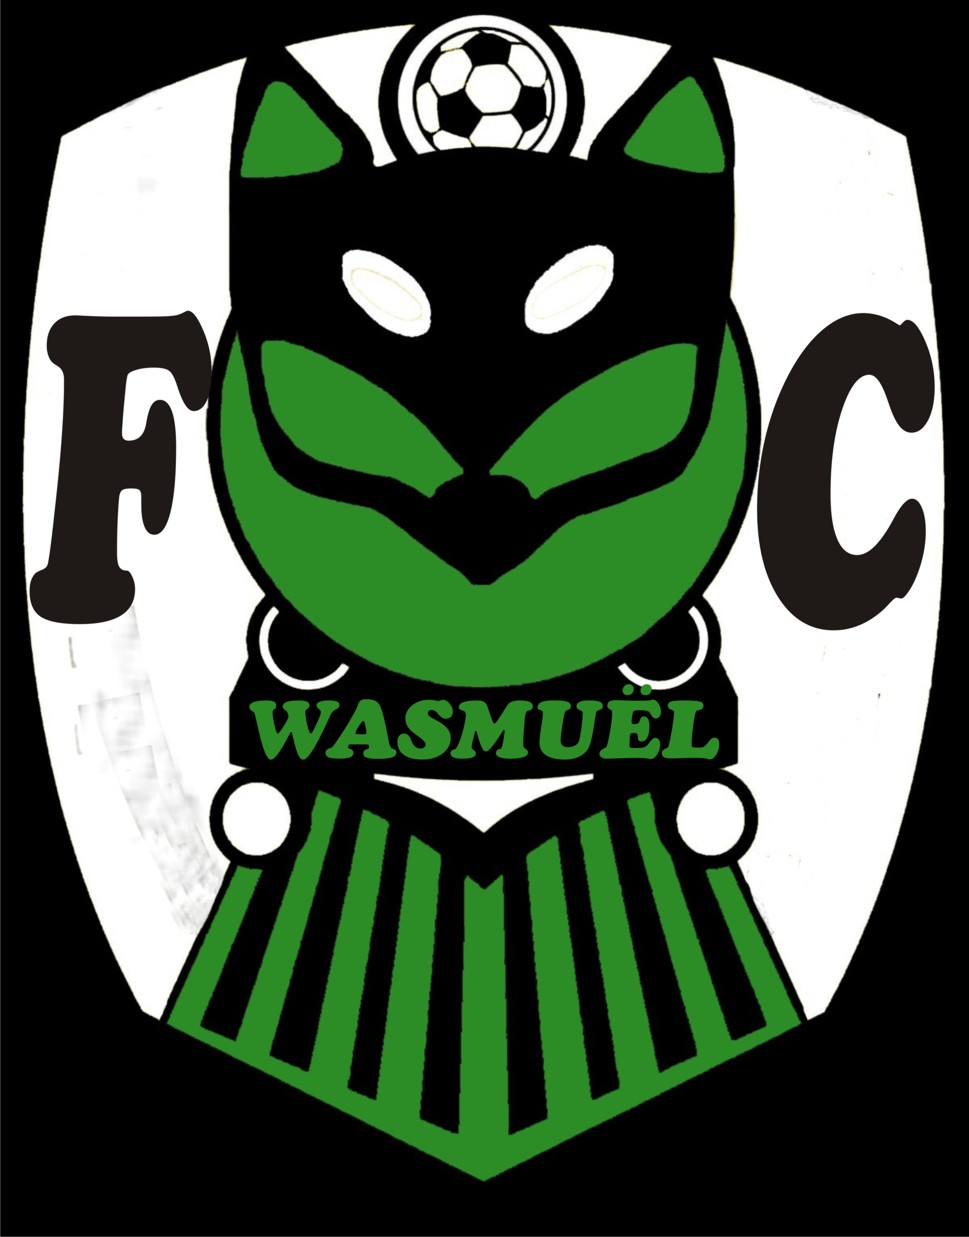 7 - Football Club Wasmuel